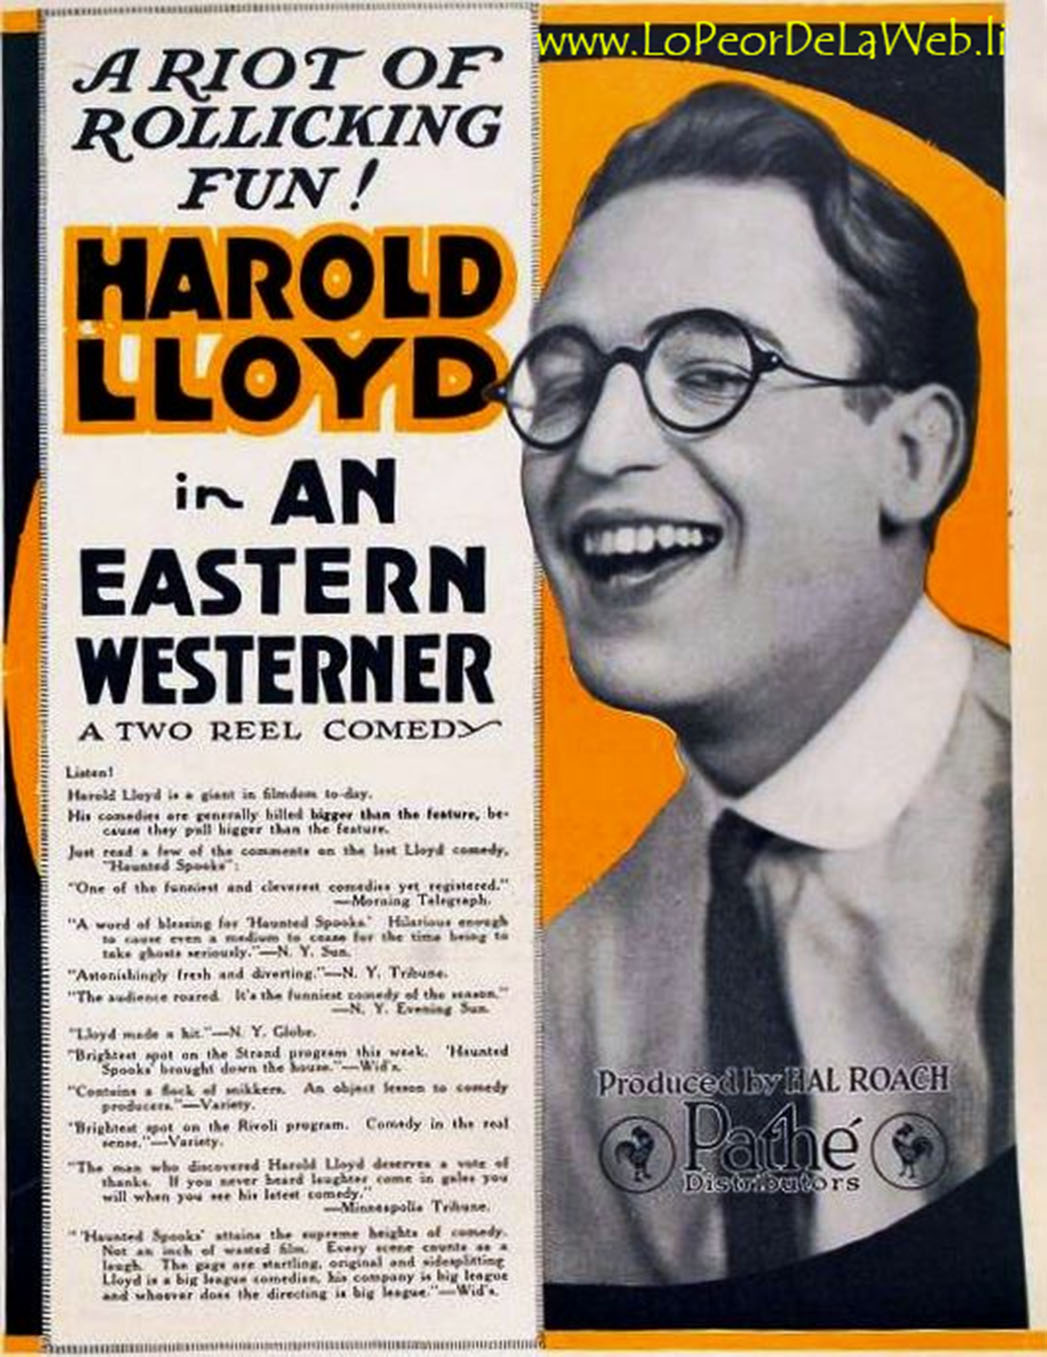 Un Auténtico Western (1920 / Cine Mudo / Harold Lloyd)